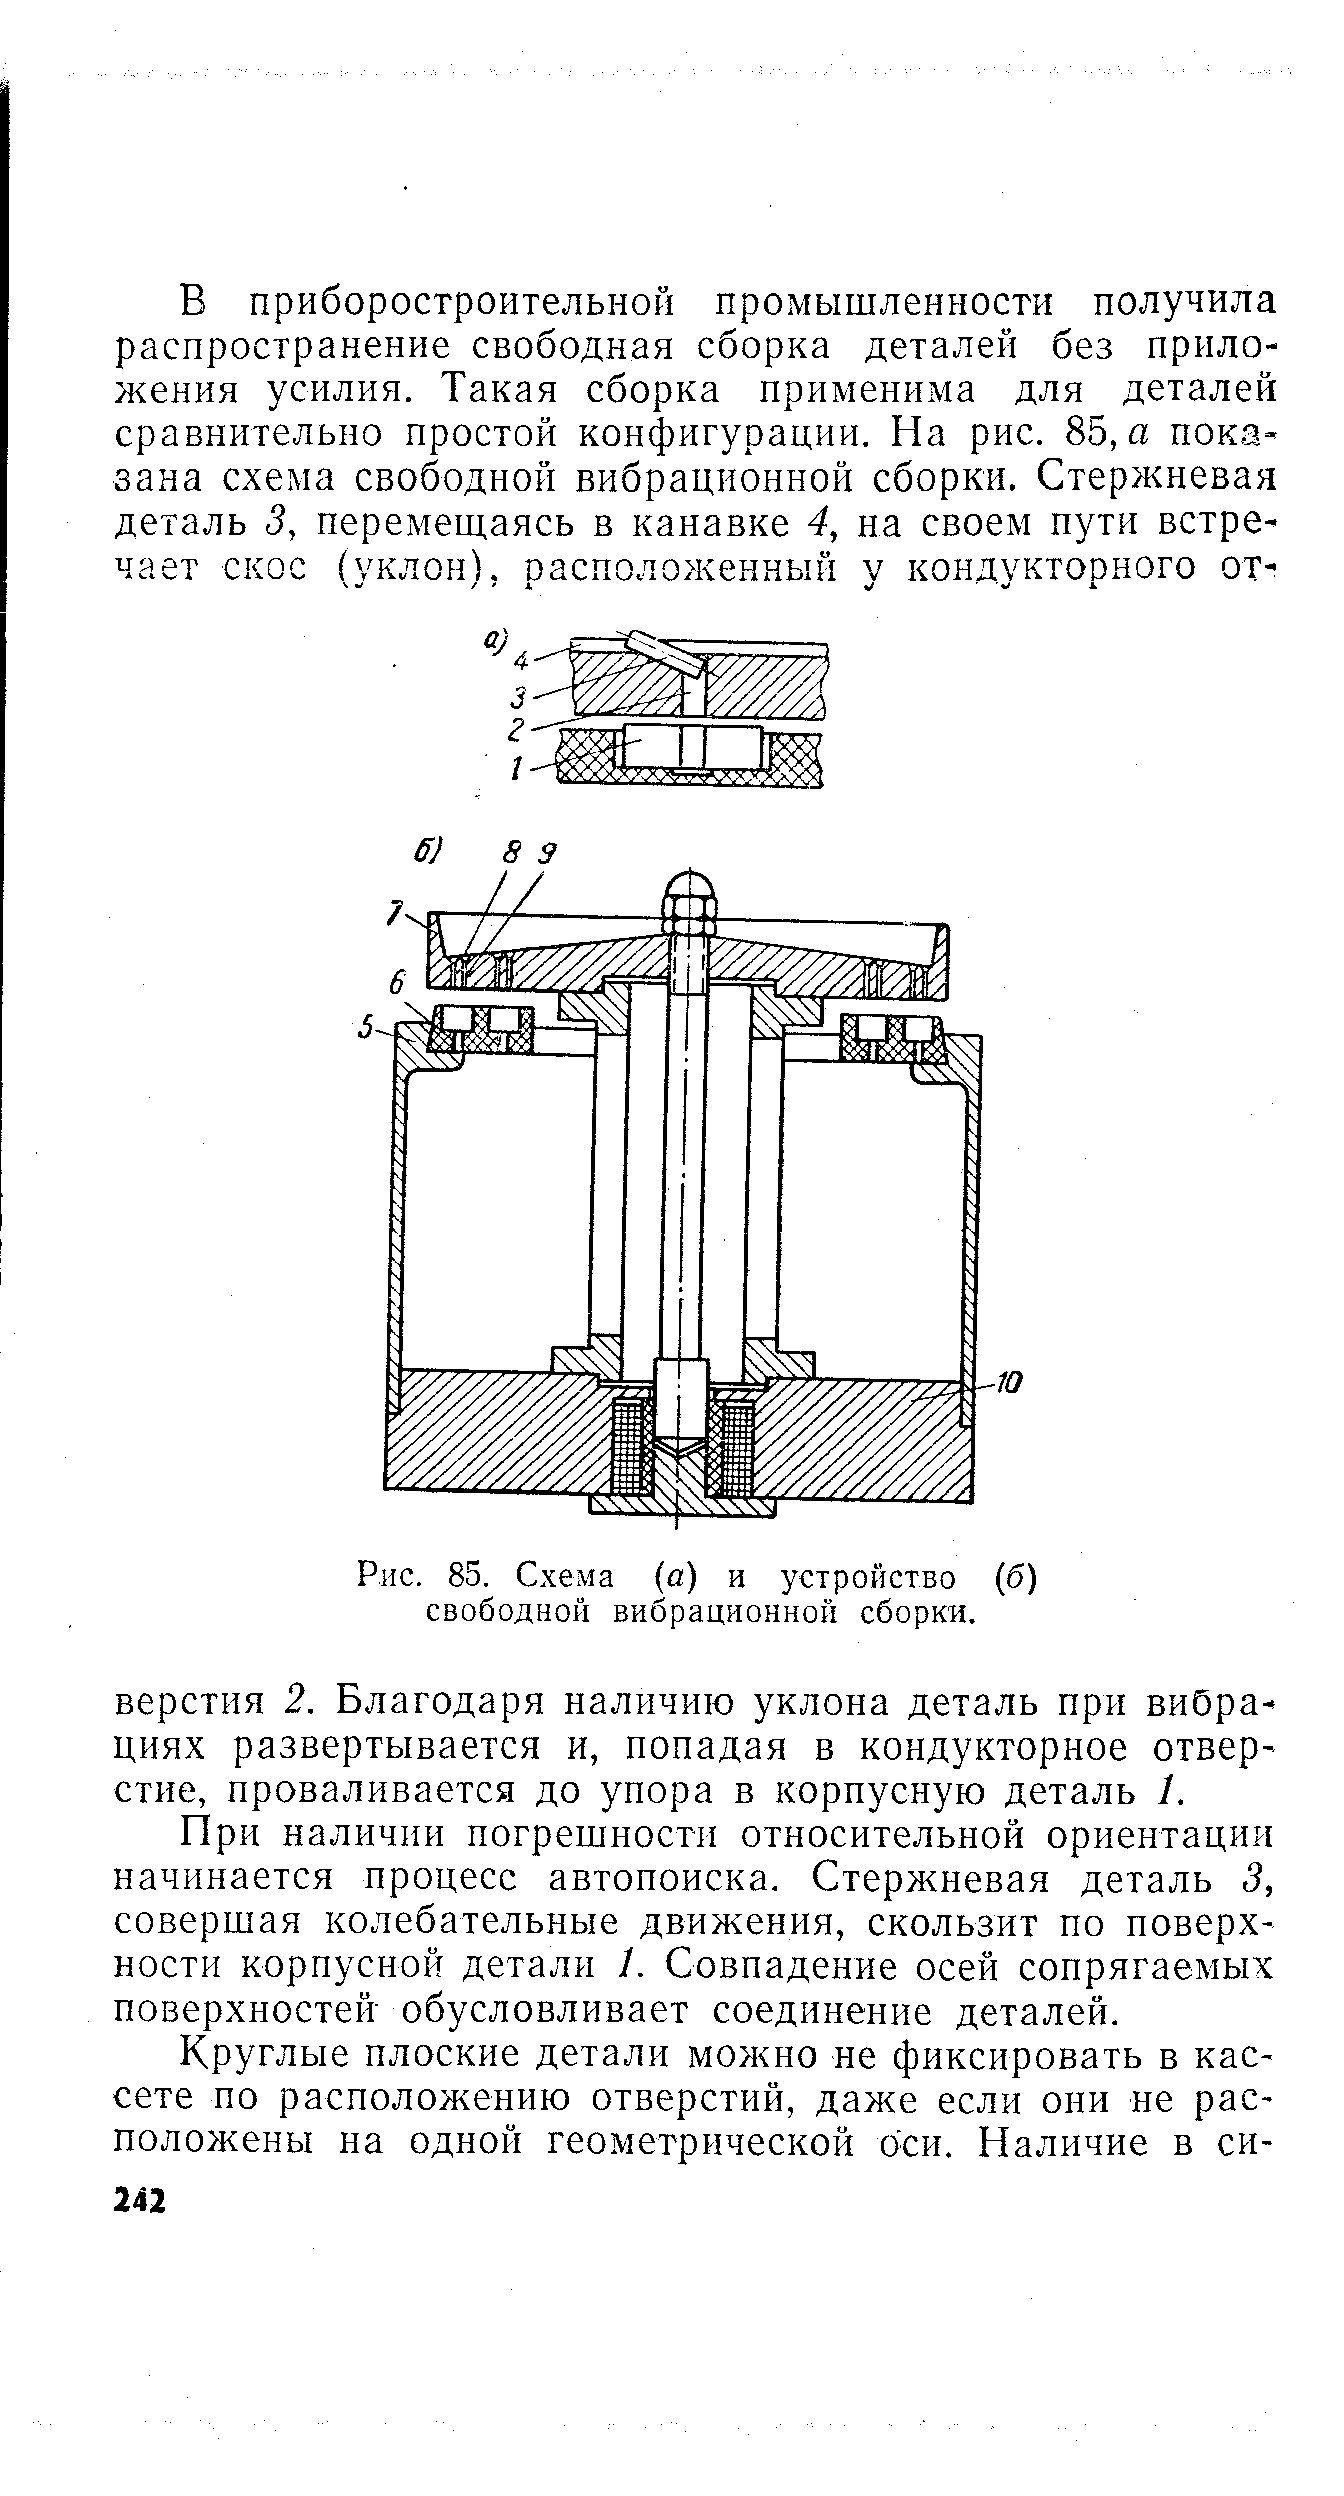 Рис. 85. Схема (о) и устройство (б) свободной вибрационной сборки.
